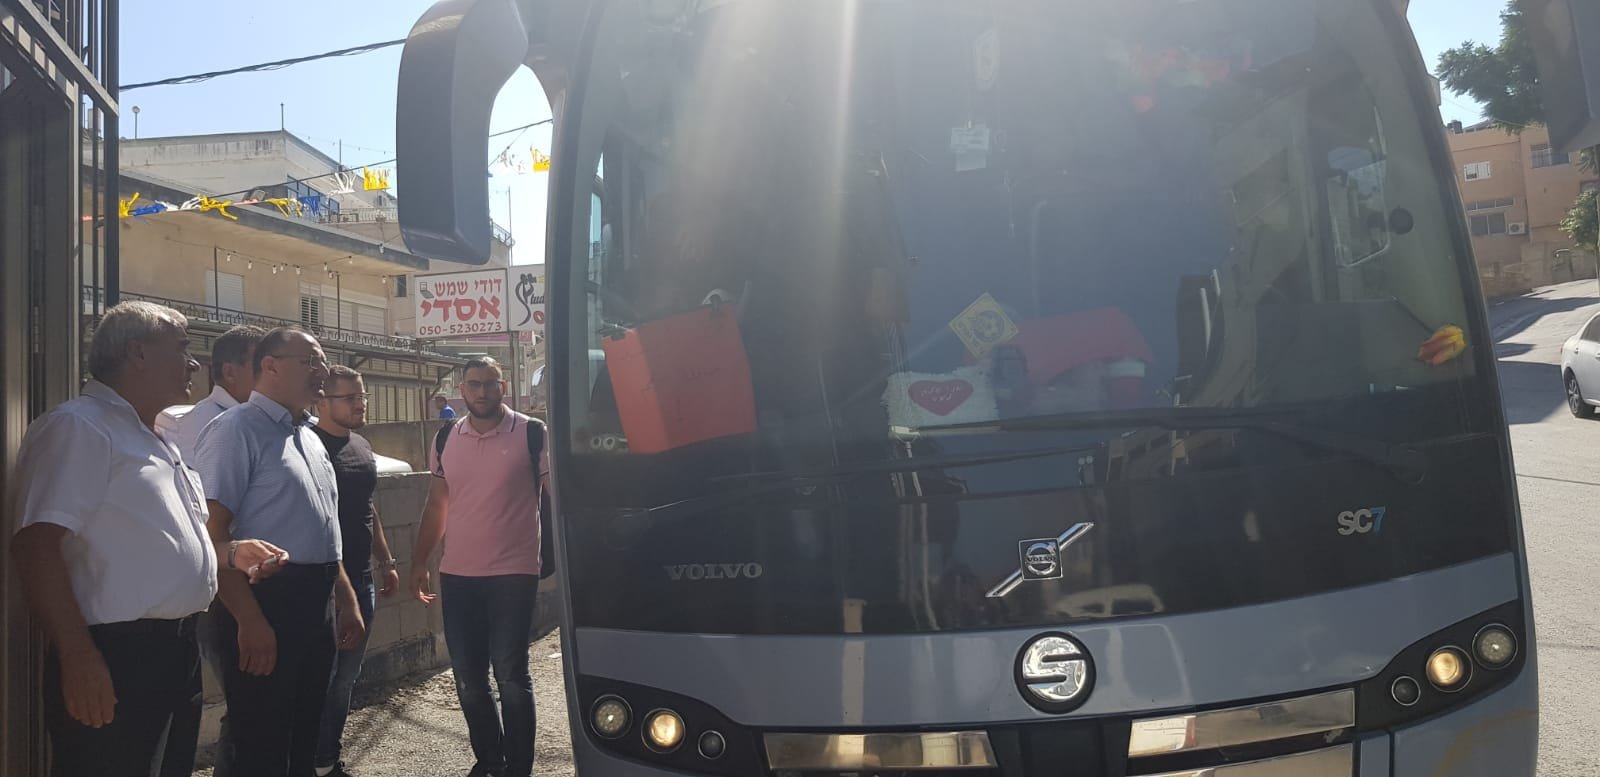 انطلاق الحافلات الى تل أبيب للمشاركة في امّ المظاهرات -2